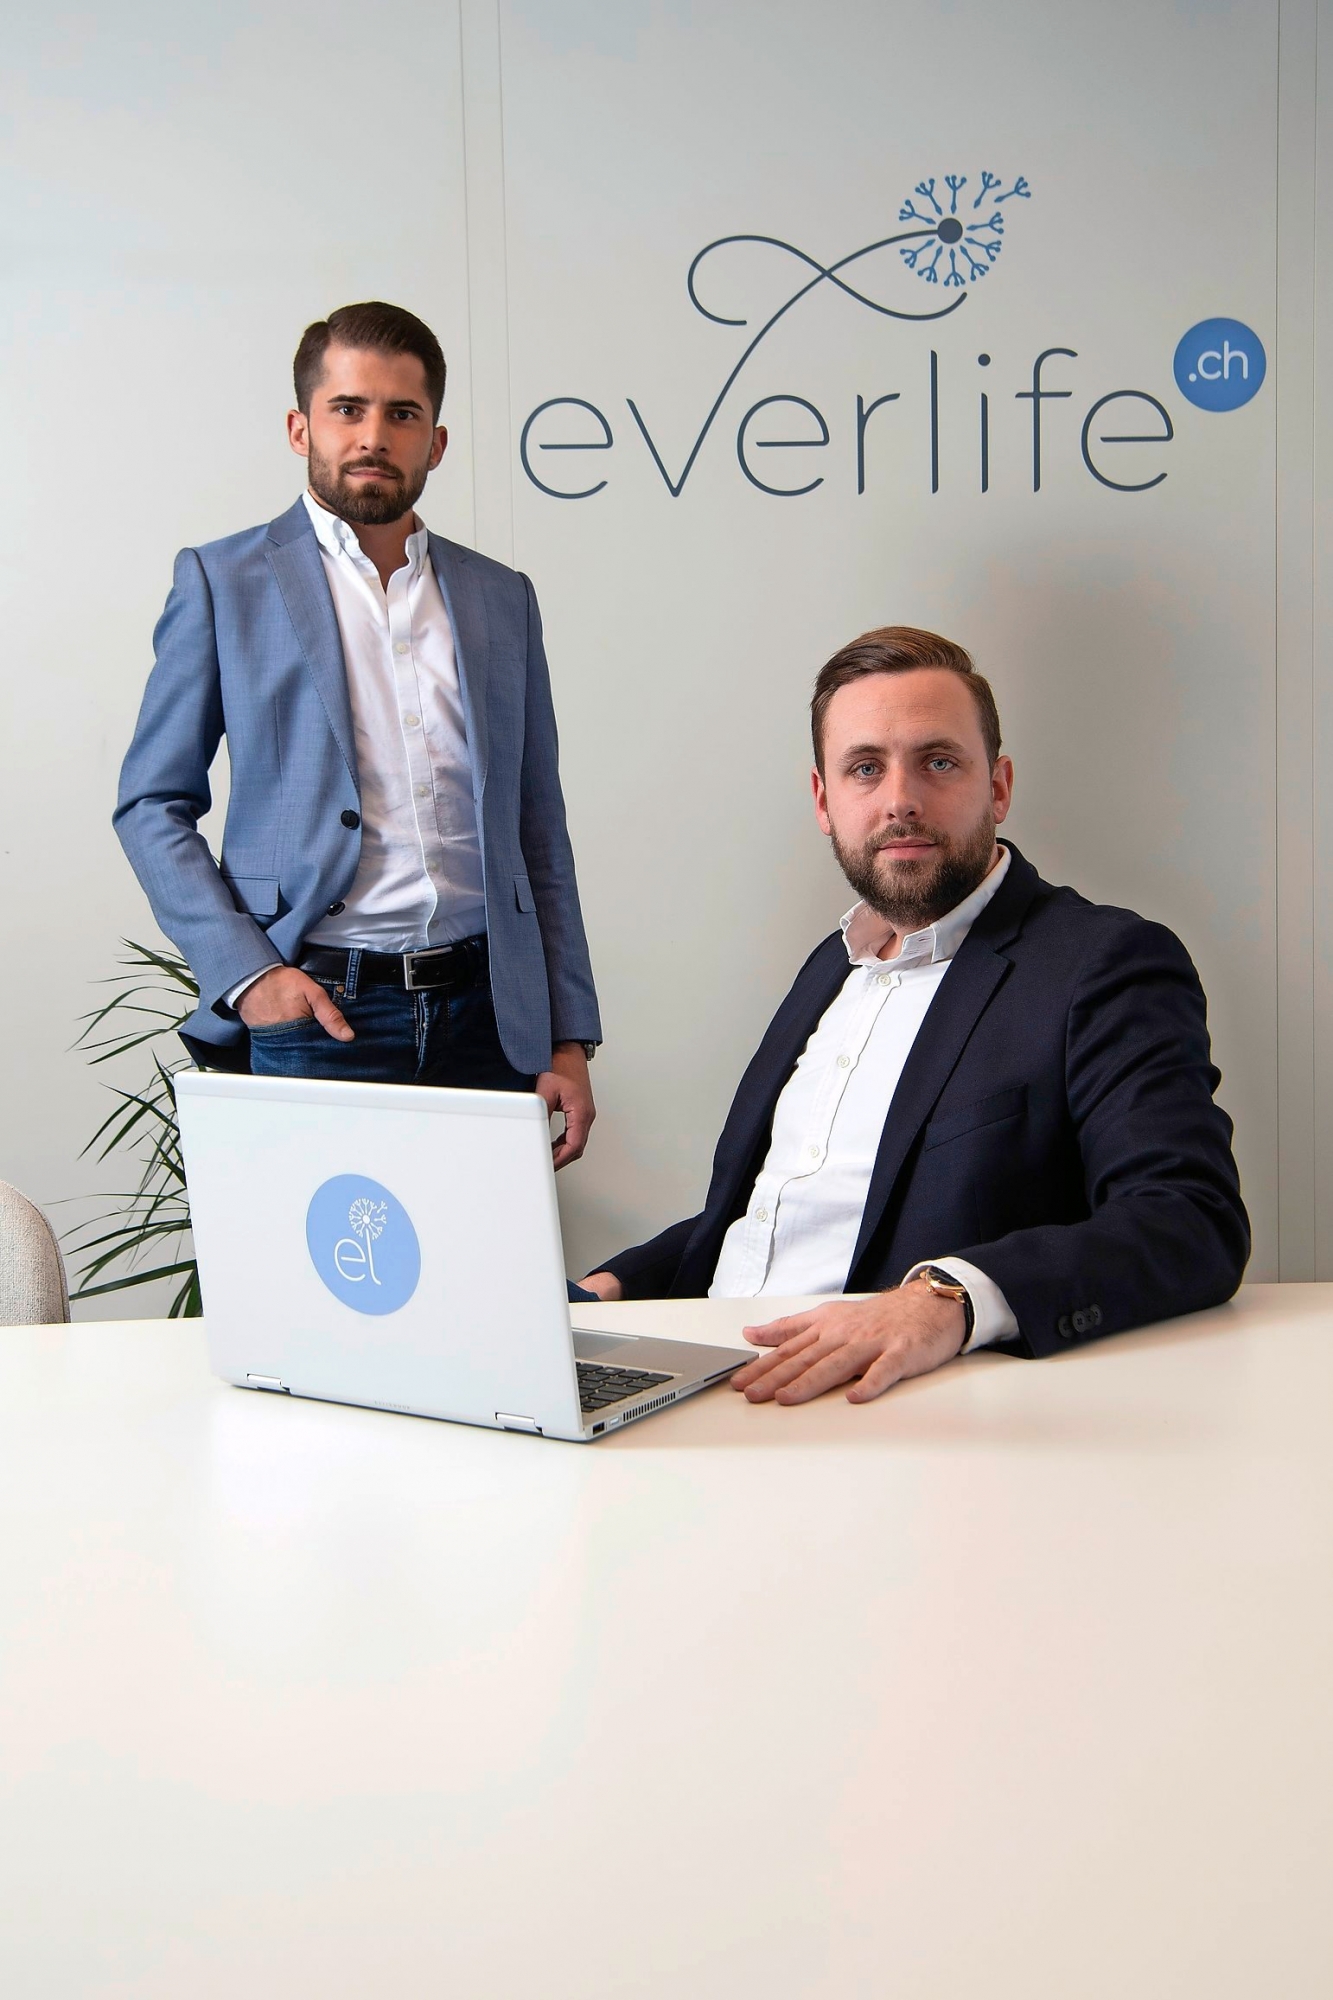 Lancement d'une start-up, Everlife.ch, intermédiaire funéraire en ligne.
Deux managers de la société, Fabrice Carrel, à gauche, et Christopher Englund
Photo Lib / Charly Rappo, Villars-sur-Glâne, 19.02.2020